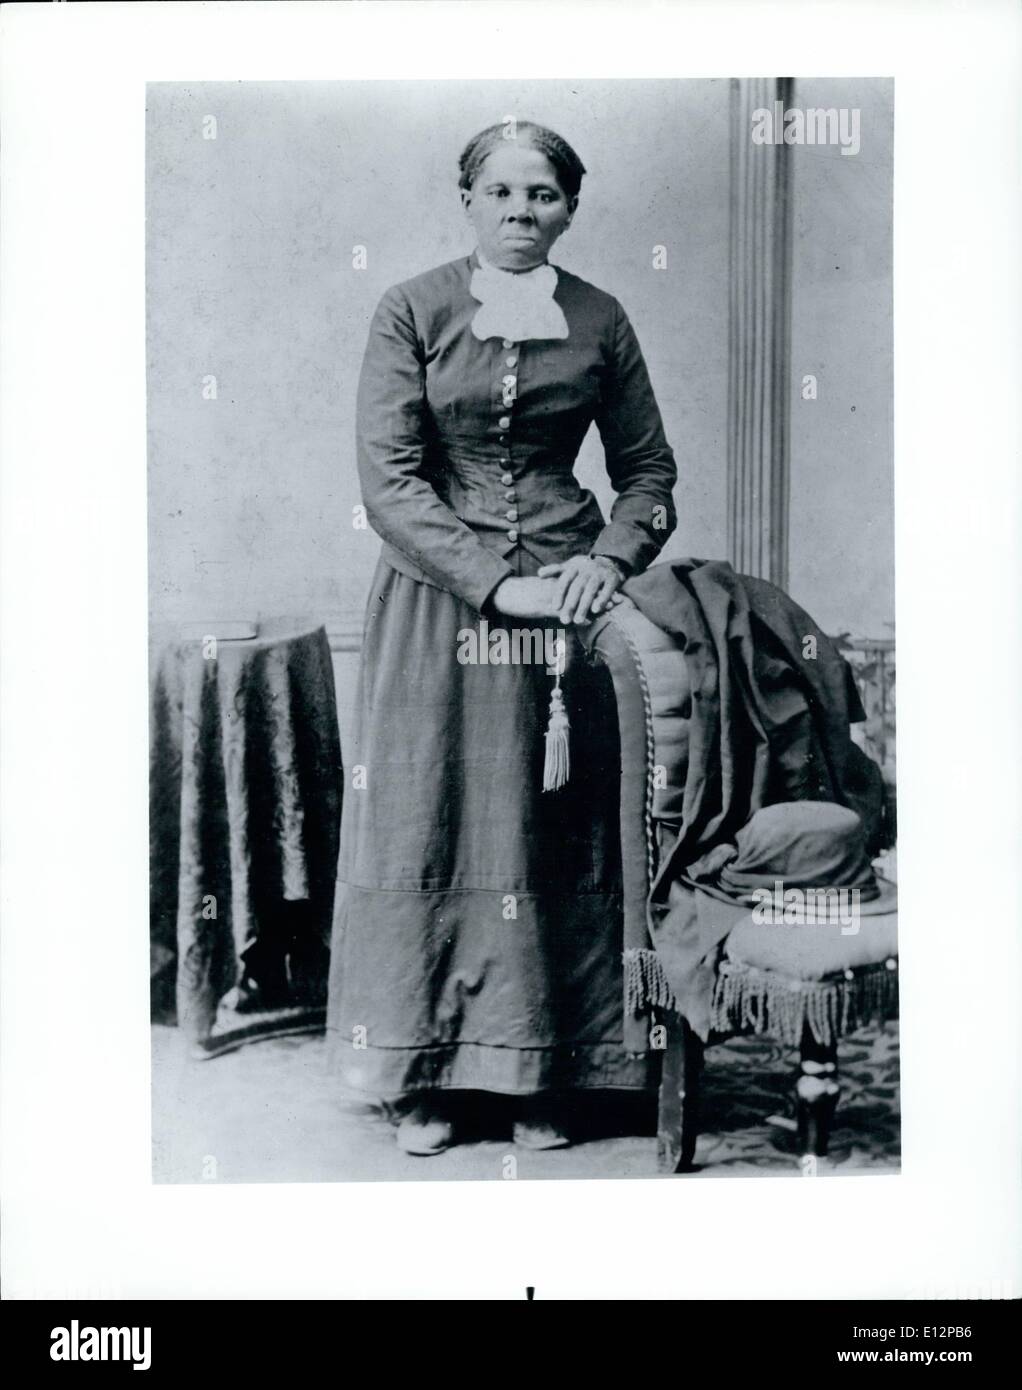 24. Feb. 2012 - die amerikanische Ethnie: Seine Geschichte. 5 entschlossener Sklave Harriet Tubman, eine analphabete Feldhand, entkam, kehrte aber oft zurück, um über 300 andere nach Norden zu führen. Stockfoto